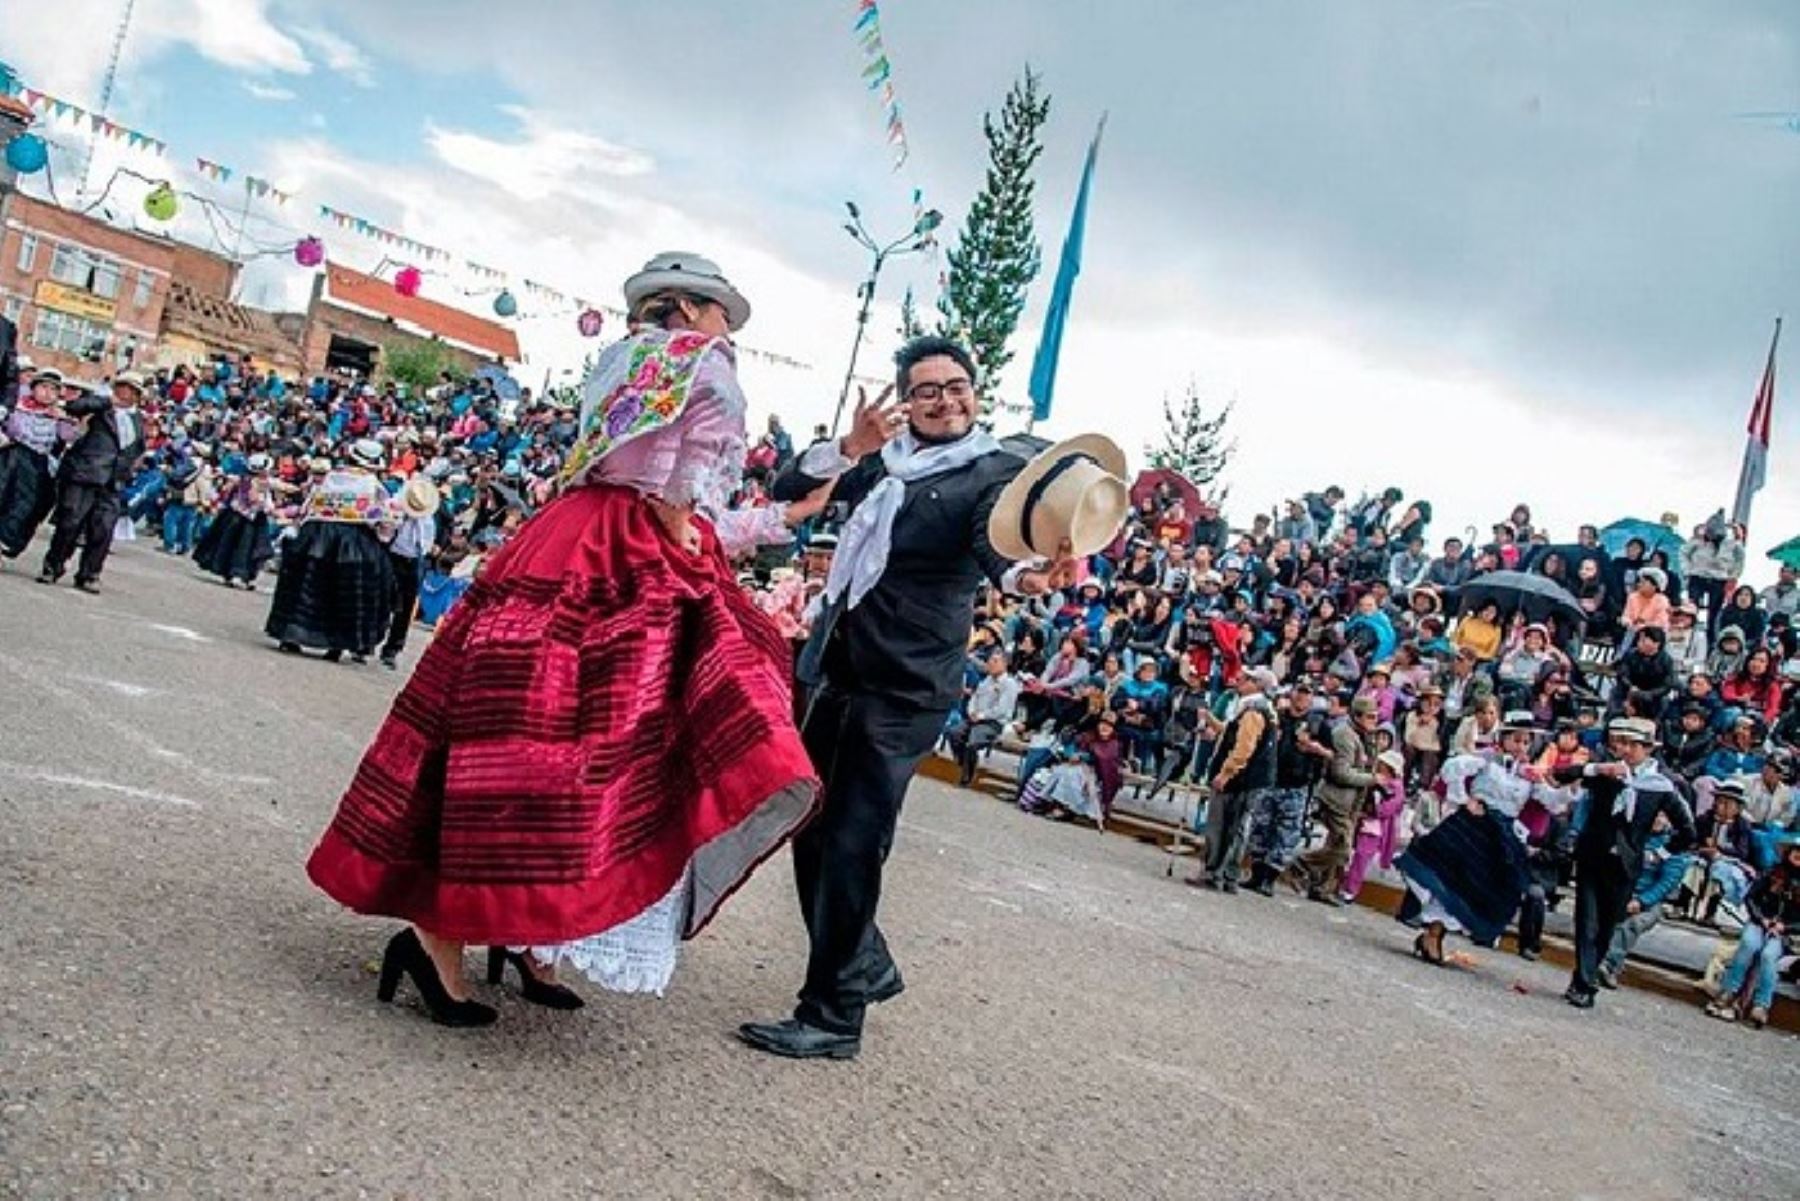 El Carnaval Jaujino, que se festeja en una de las capitales históricas del Perú, es llamado el “Más elegante del Perú” y fue declarado Patrimonio Cultura de la Nación en 2018.